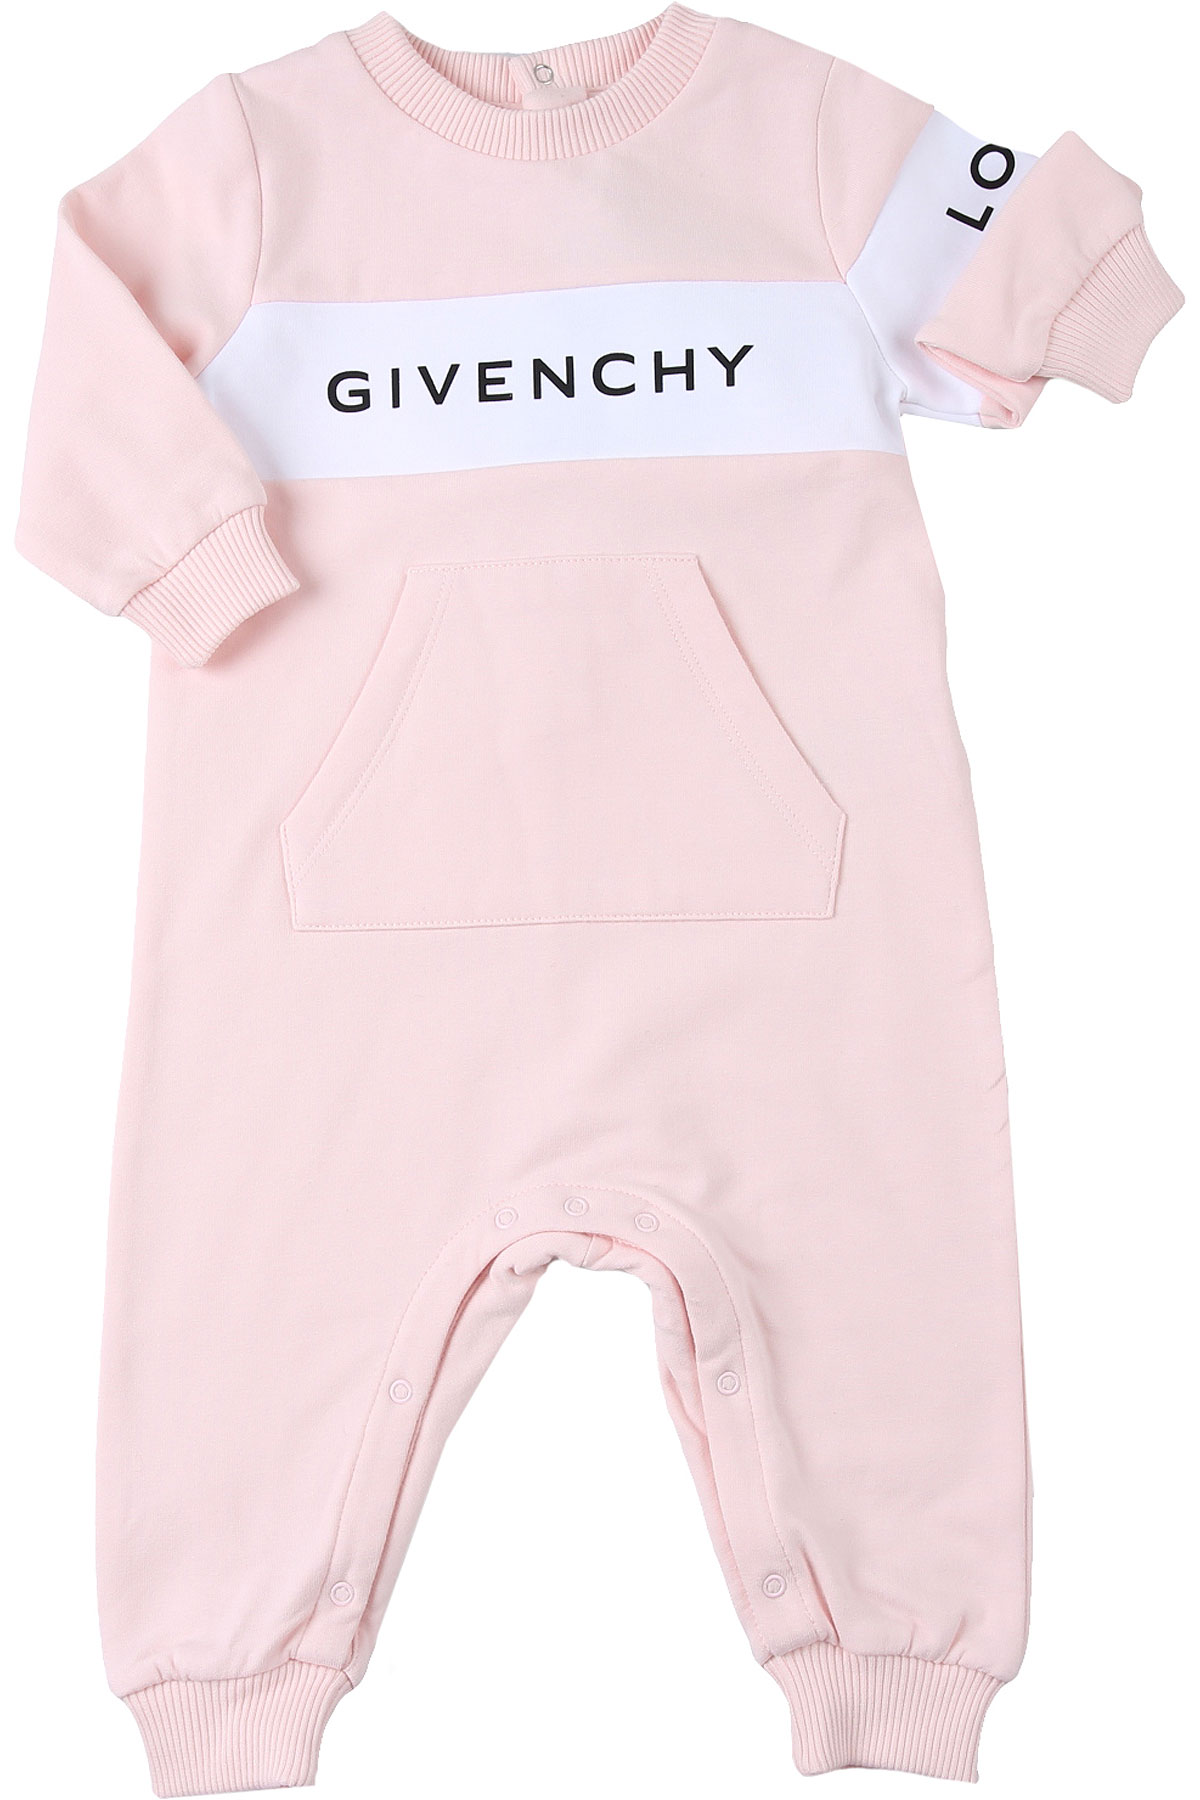 Givenchy Baby Body & Strampelanzug für Mädchen Günstig im Sale, Pink, Baumwolle, 2017, 1M 3M 6M 9M